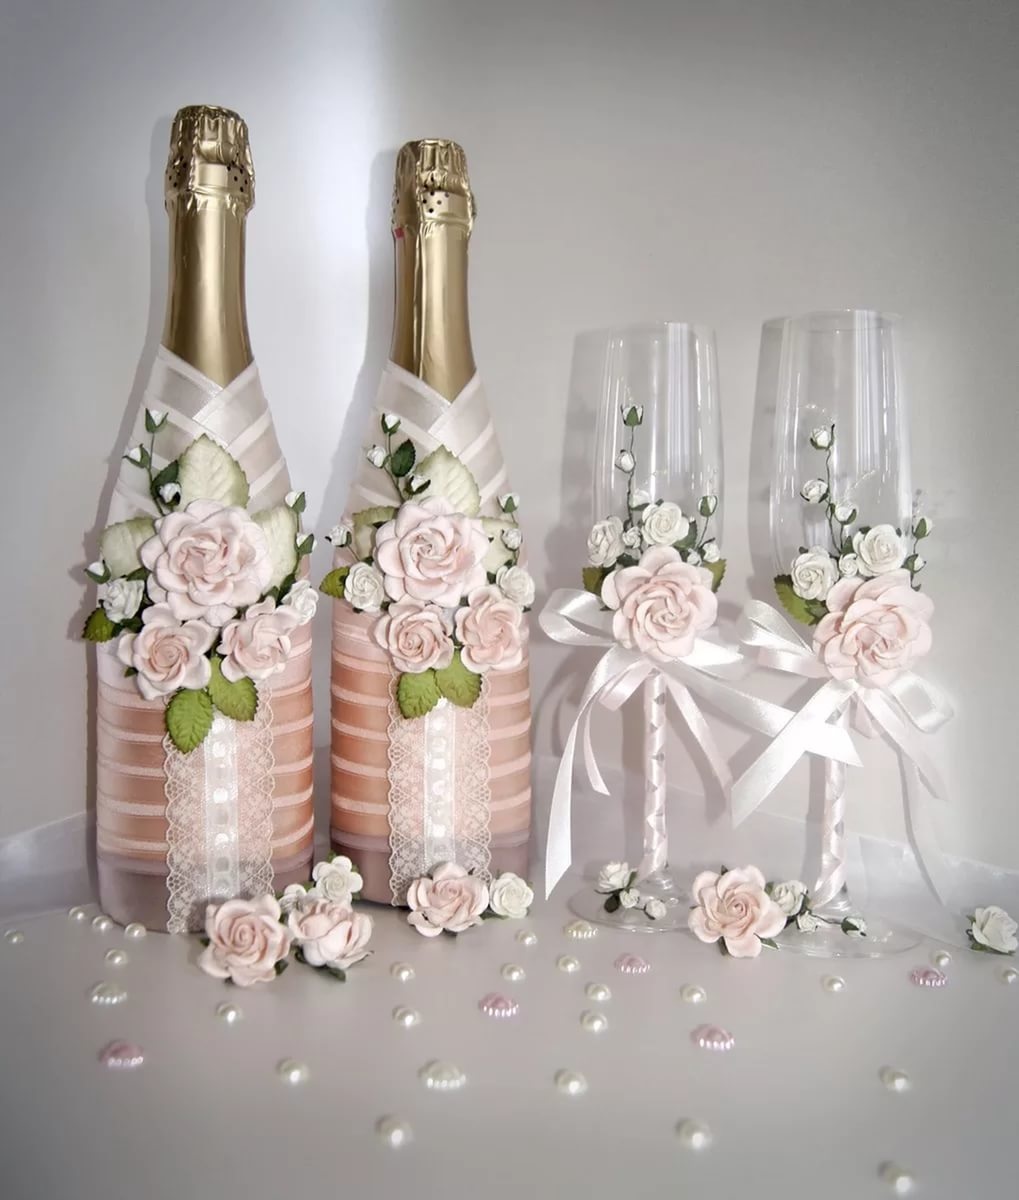 hiasan botol champagne untuk gambar hiasan perkahwinan